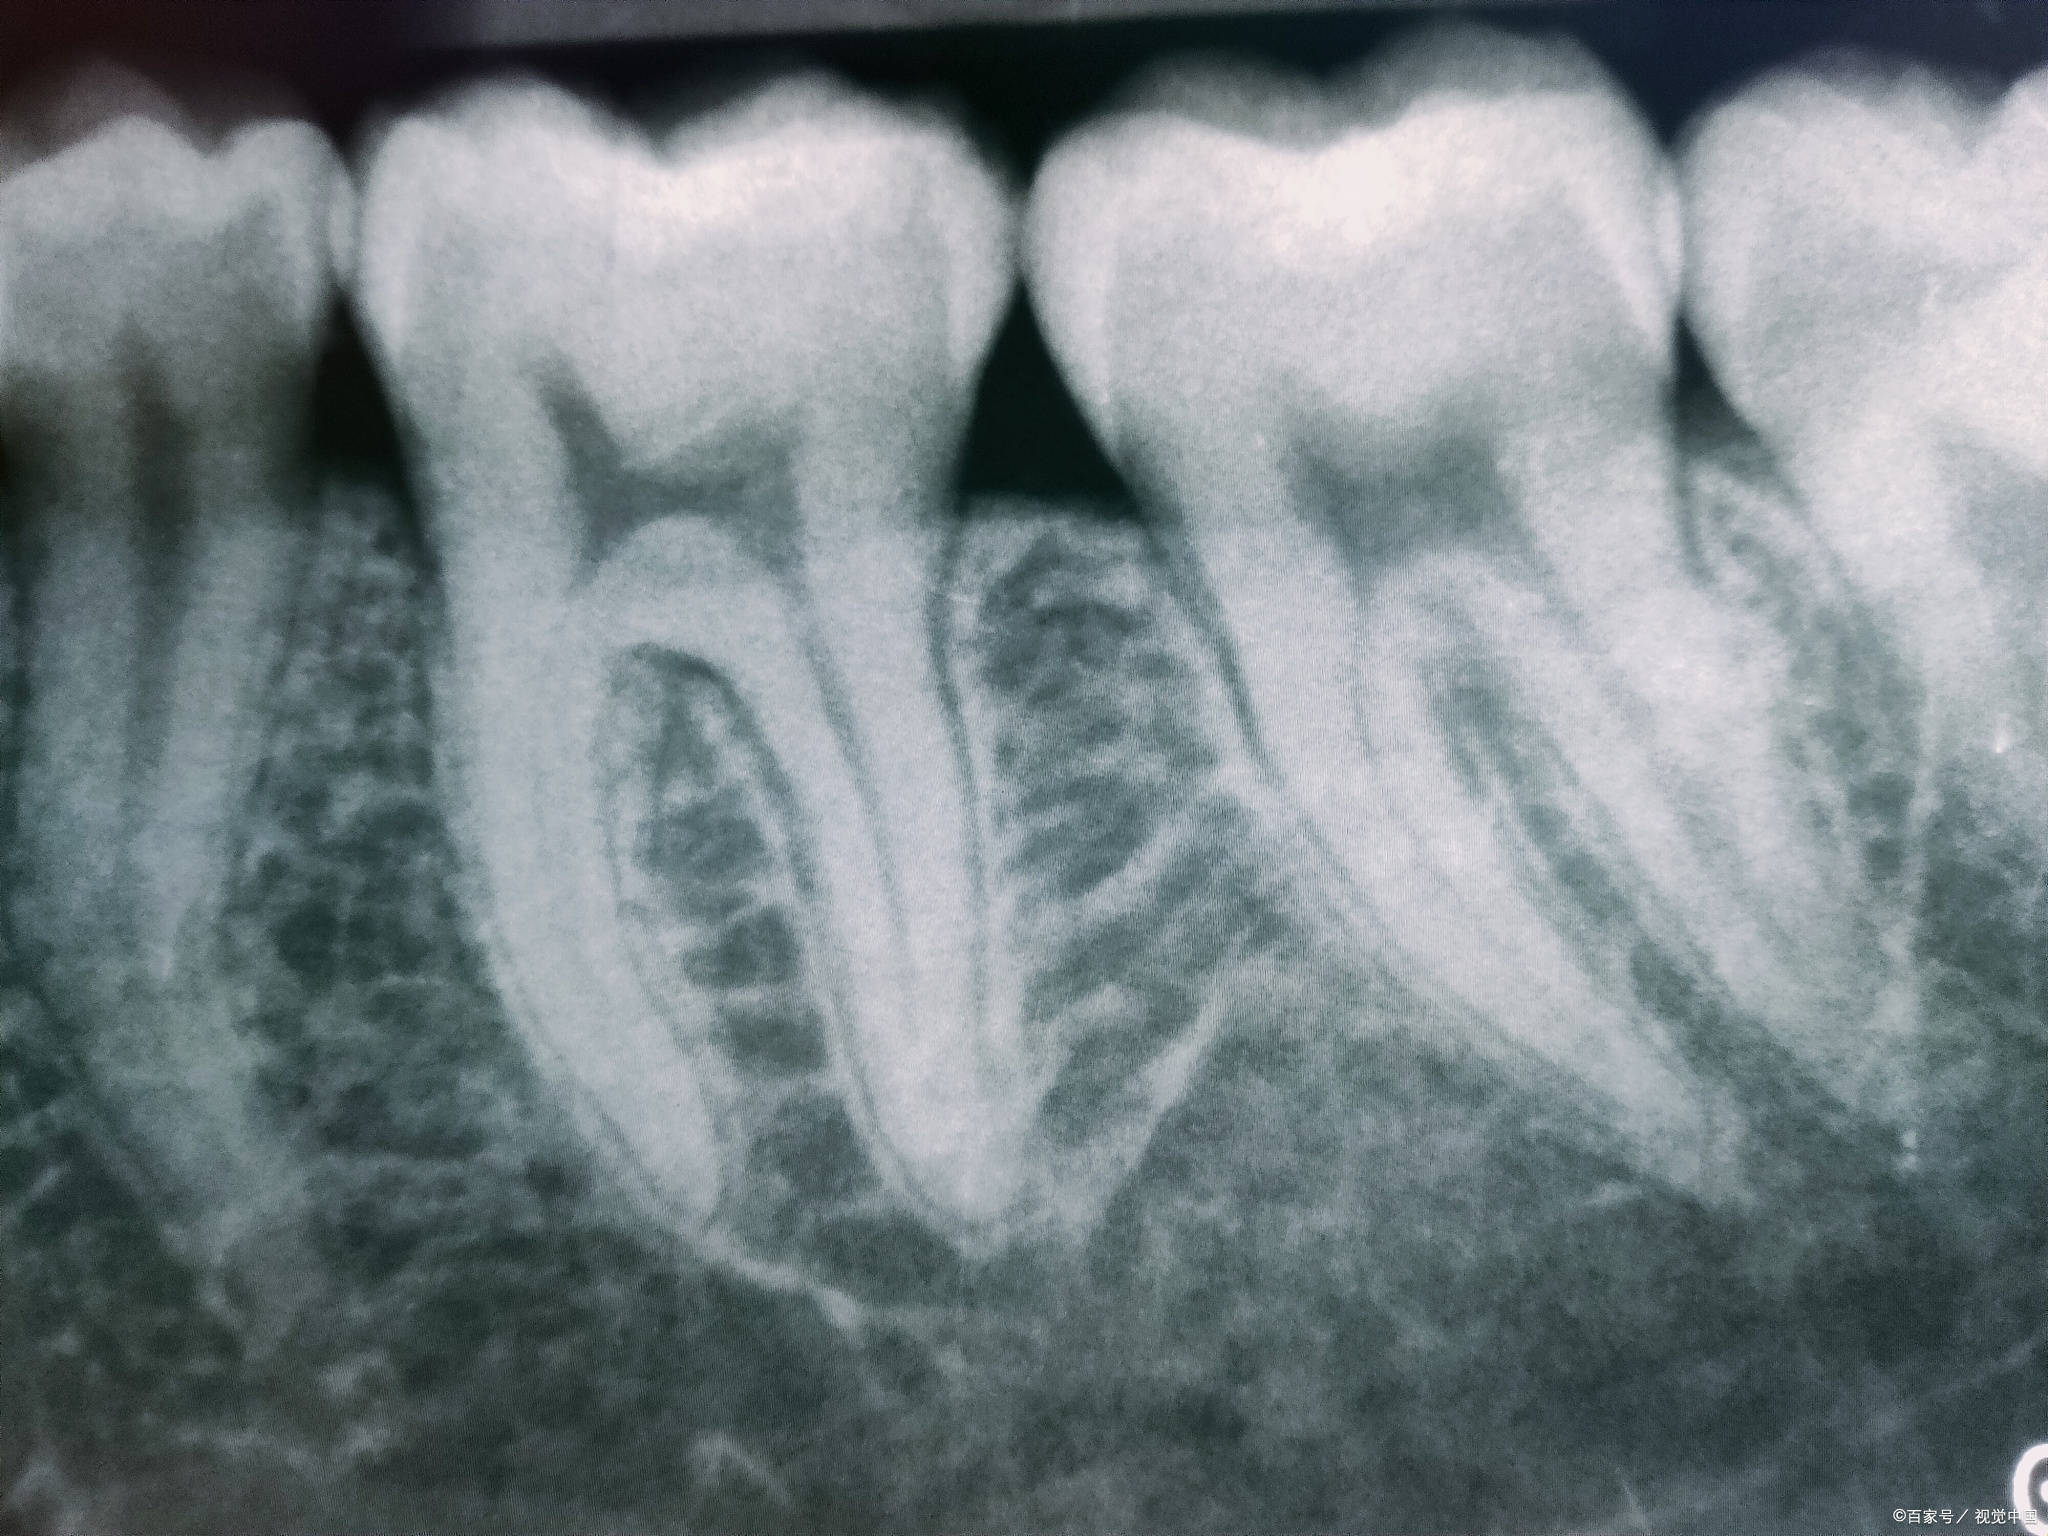 通过牙片,医生可以观察到智齿的形态和牙根生长方向,以及智齿的牙根与